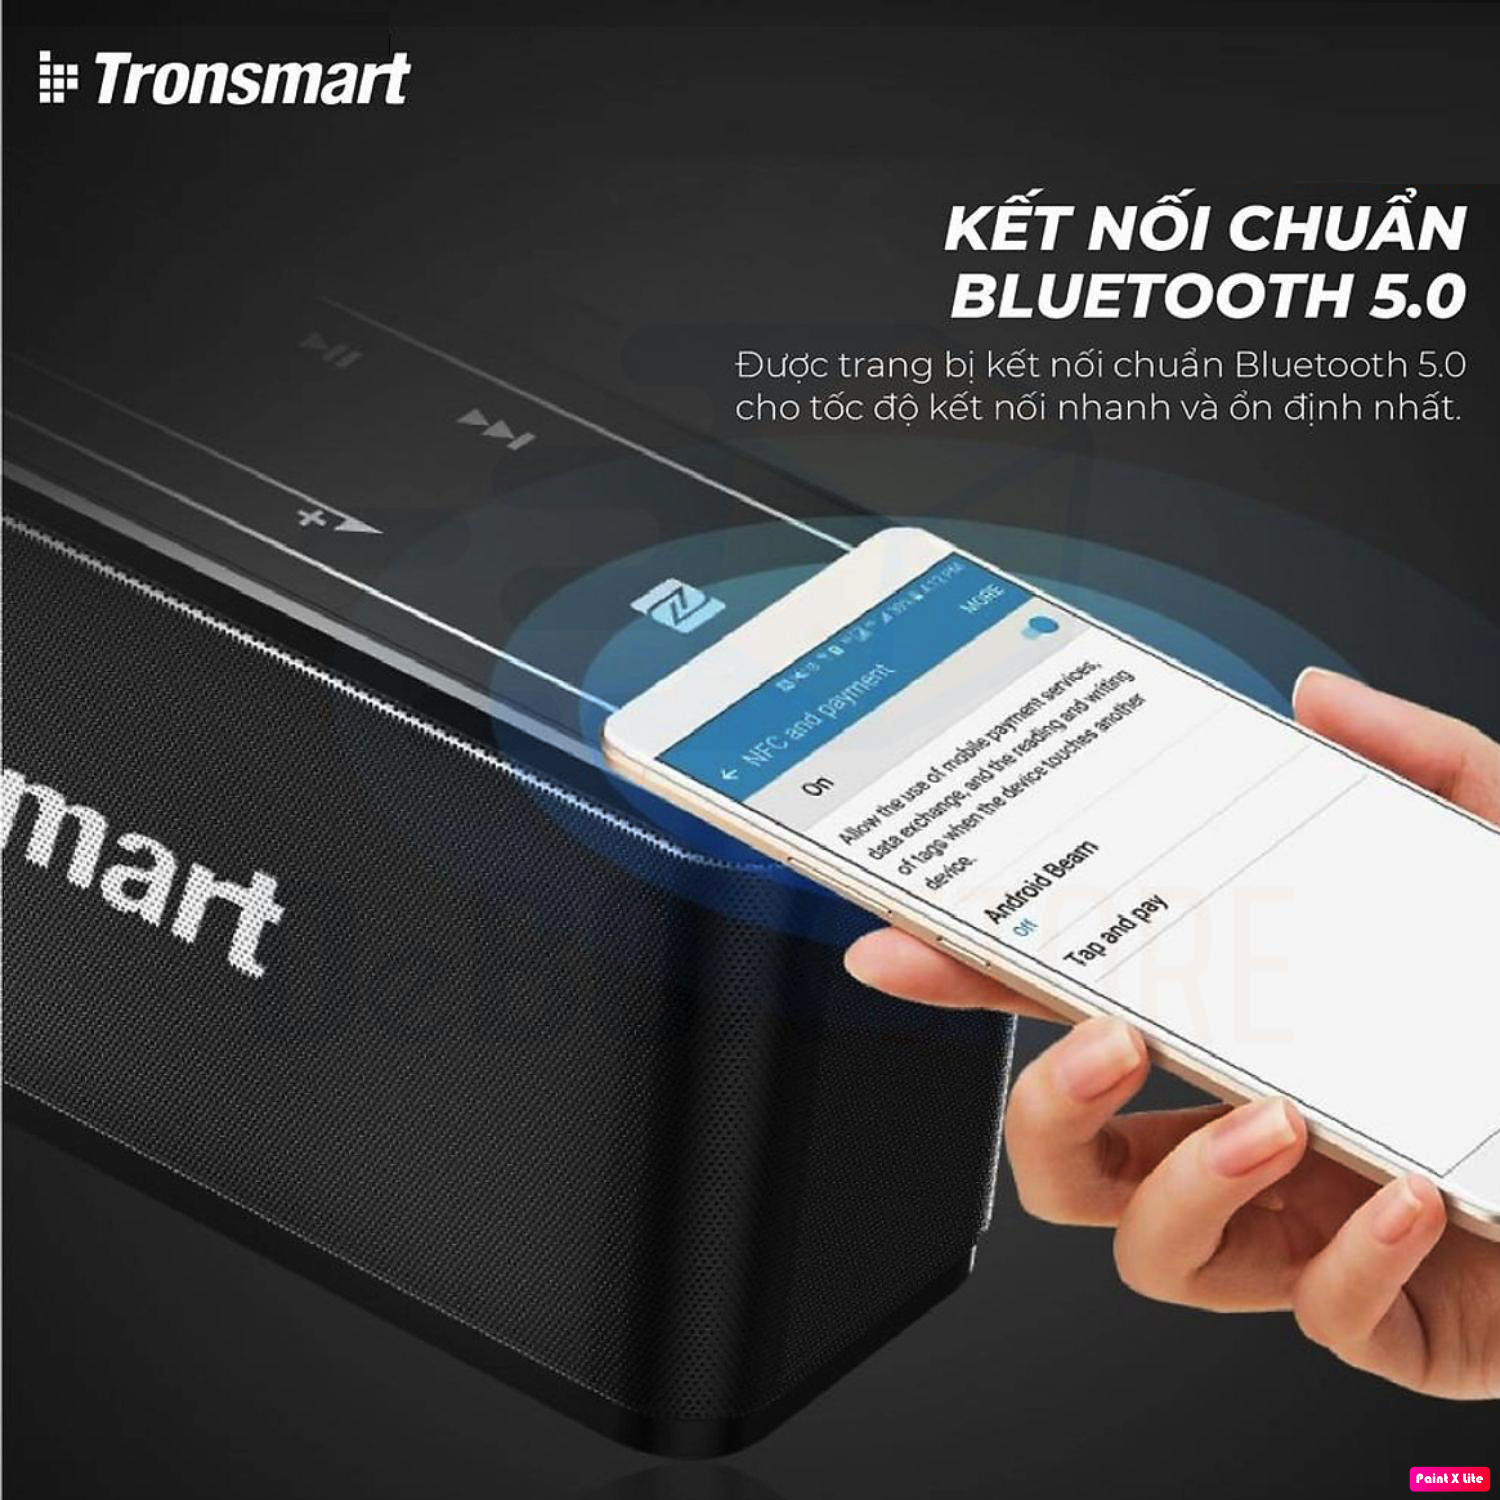 Loa Bluetooth Không Dây Tronsmart Element MEGA 40W v5.0 Hỗ trợ TWS và NFC ghép đôi 2 loa - Hàng Chính hãng